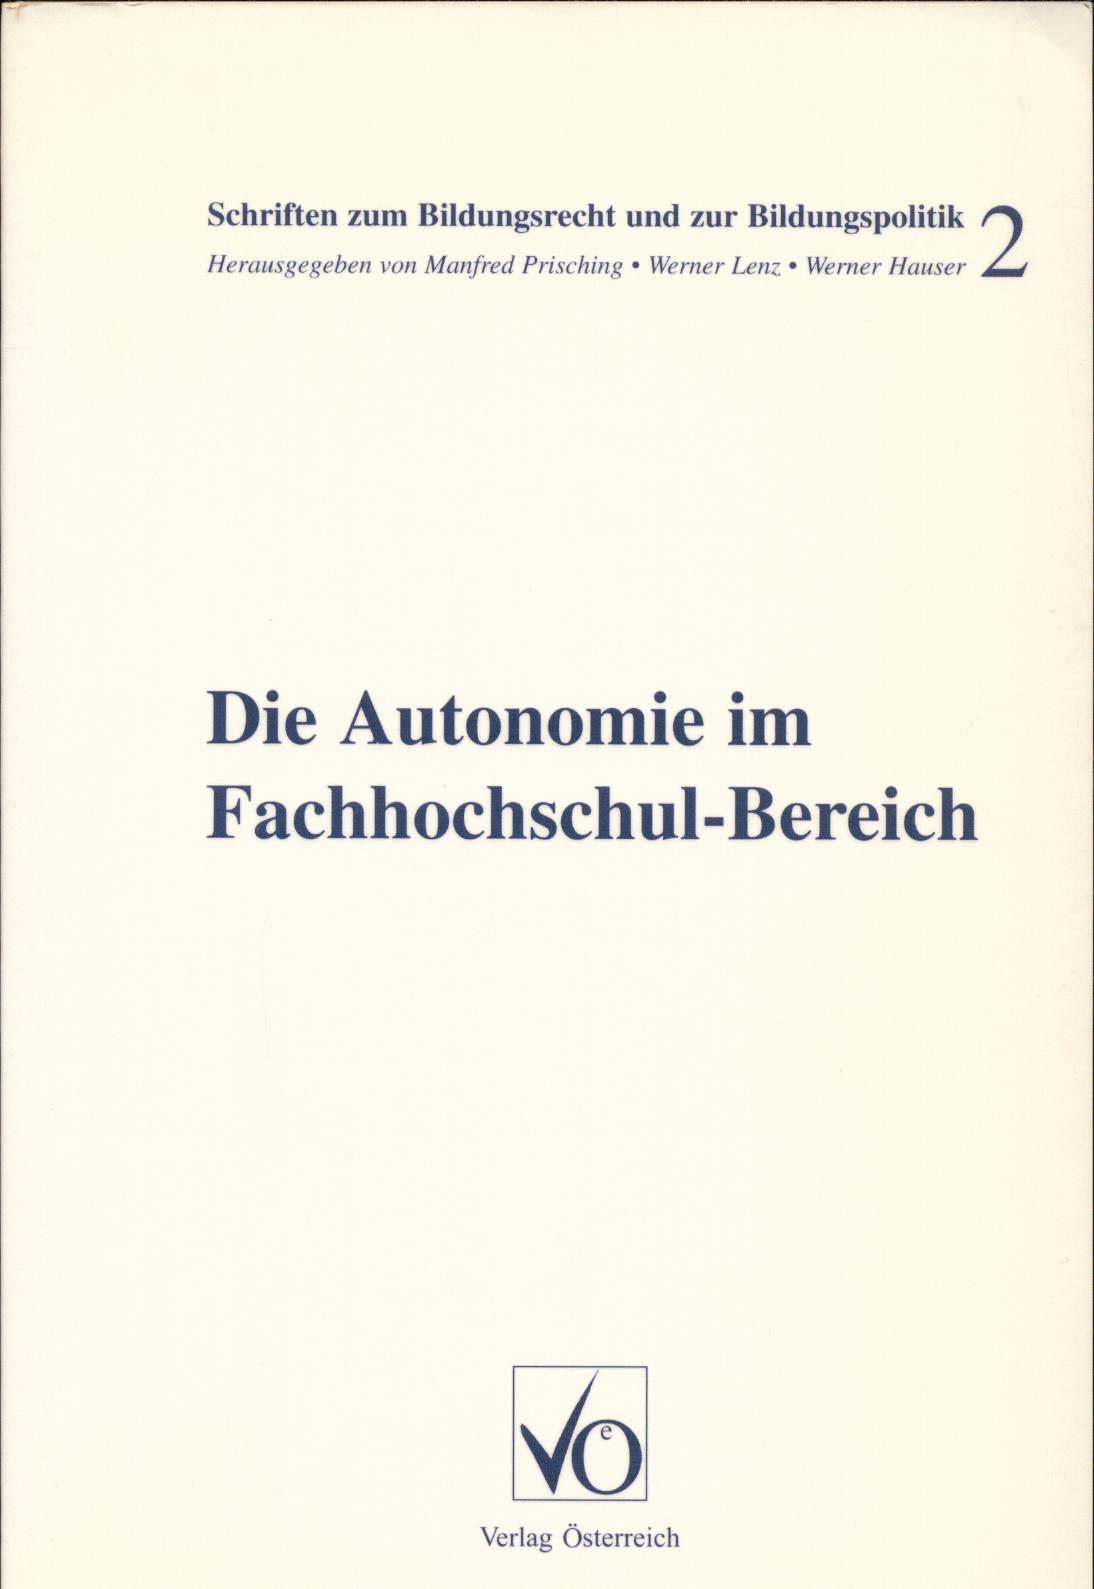 Die Autonomie im Fachhochschul-Bereich  1. Auflage - Prisching, Manfred, Werner Lenz  und Werner Hauser